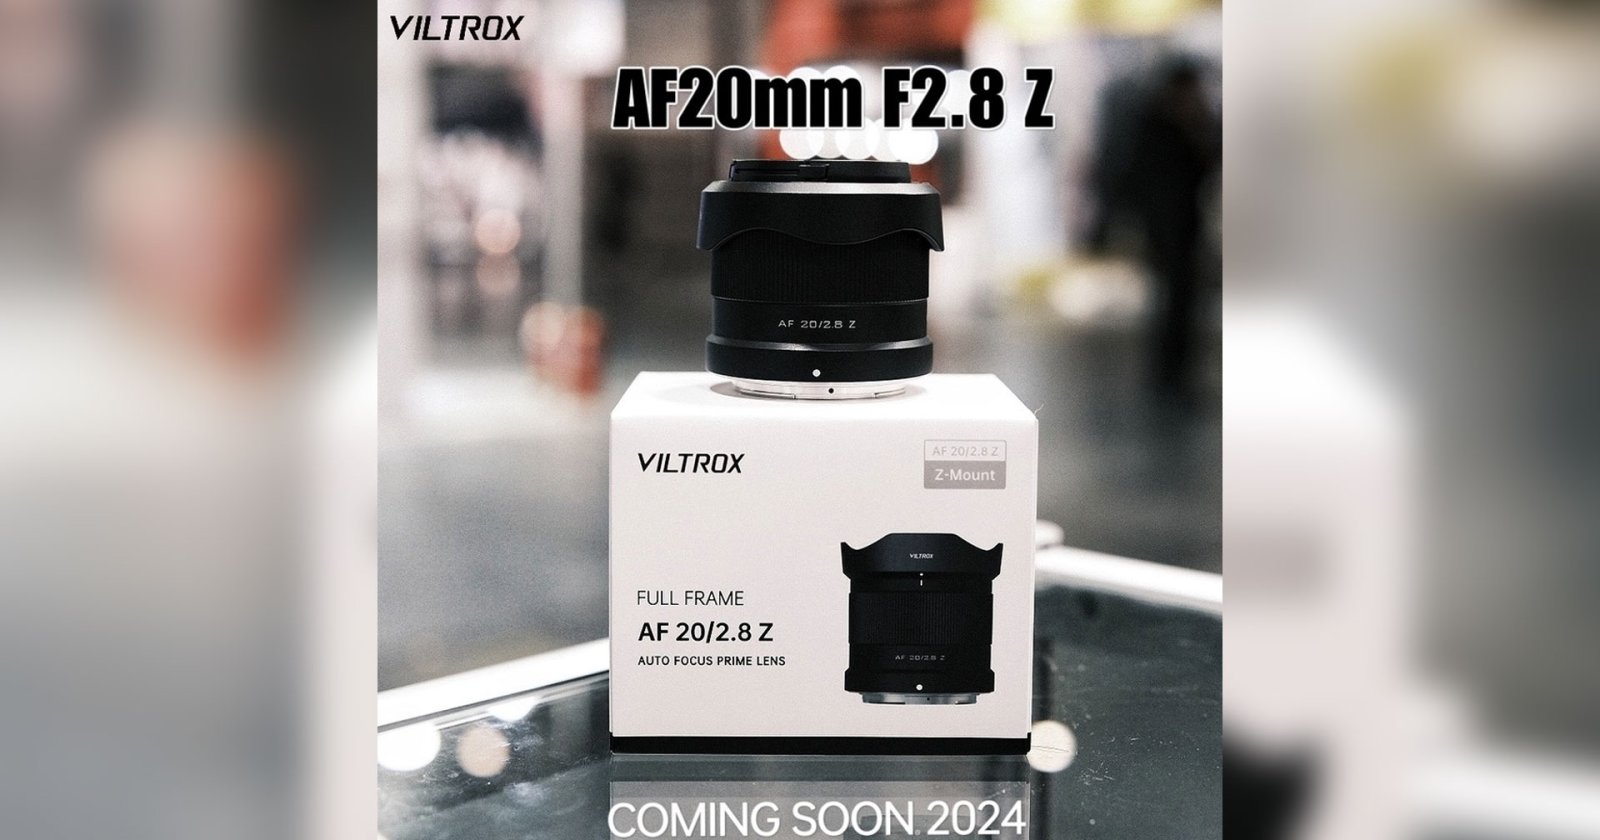 Viltrox AF 20mm F2.8 Z เลนส์มุมกว้าง เมาท์ Nikon Z เตรียมเปิดตัวเร็ว ๆ นี้